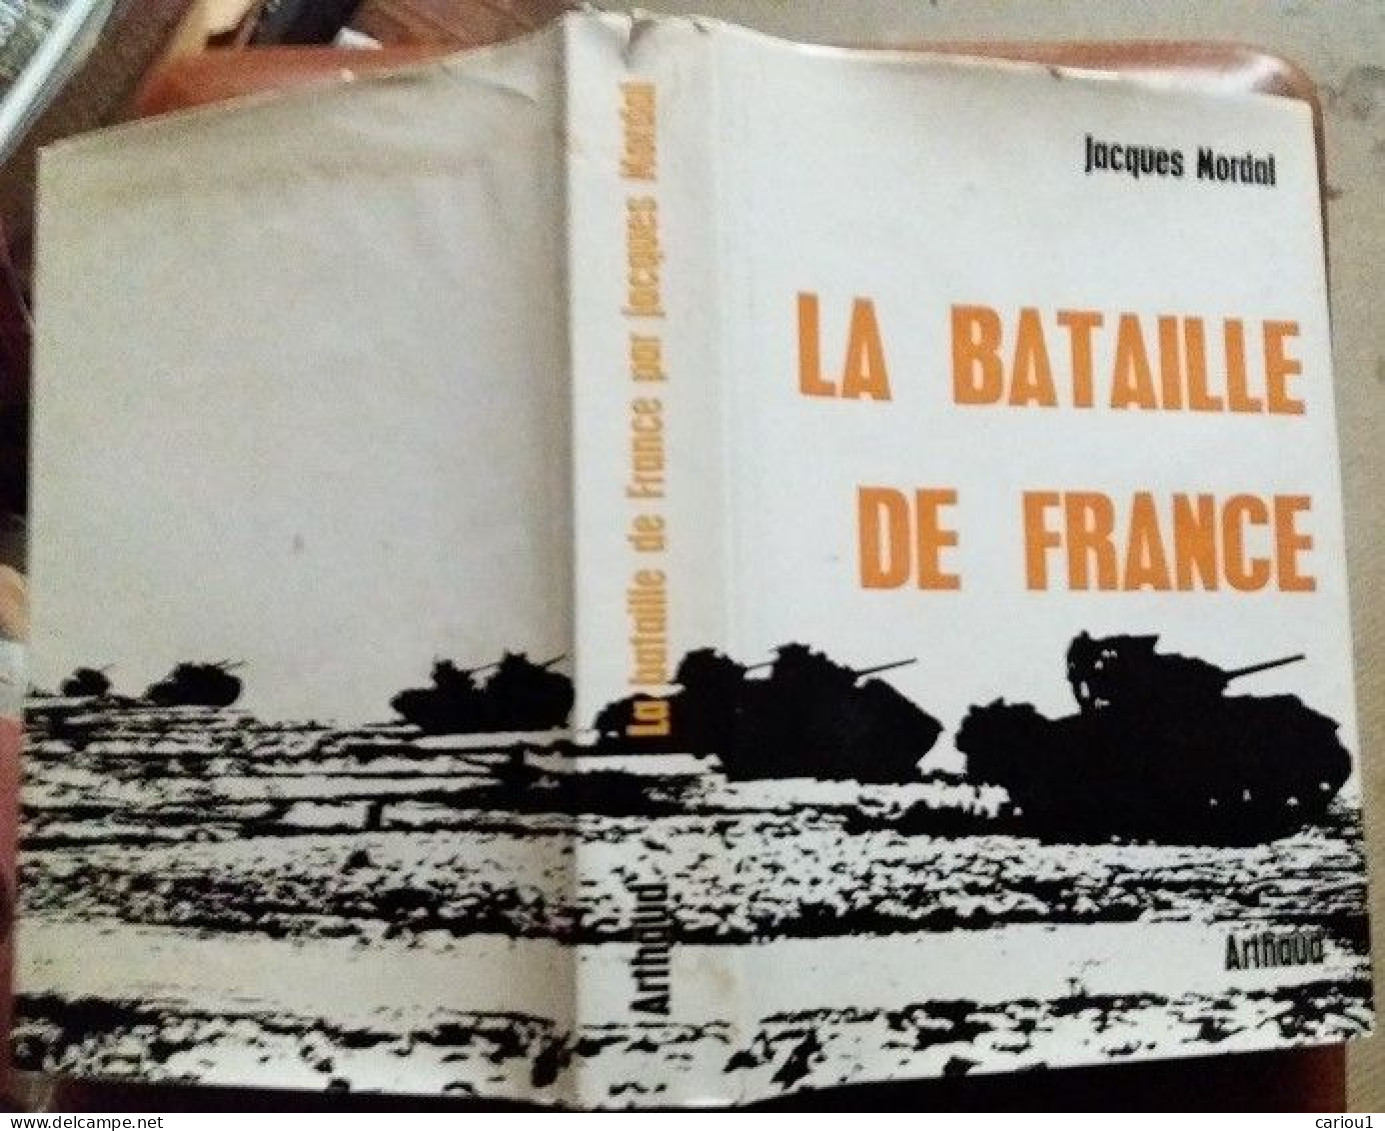 C1 Jacques MORDAL La BATAILLE DE FRANCE 1944 1945 Relie ILLUSTRE Epuise CARTES Port Inclus France - Französisch